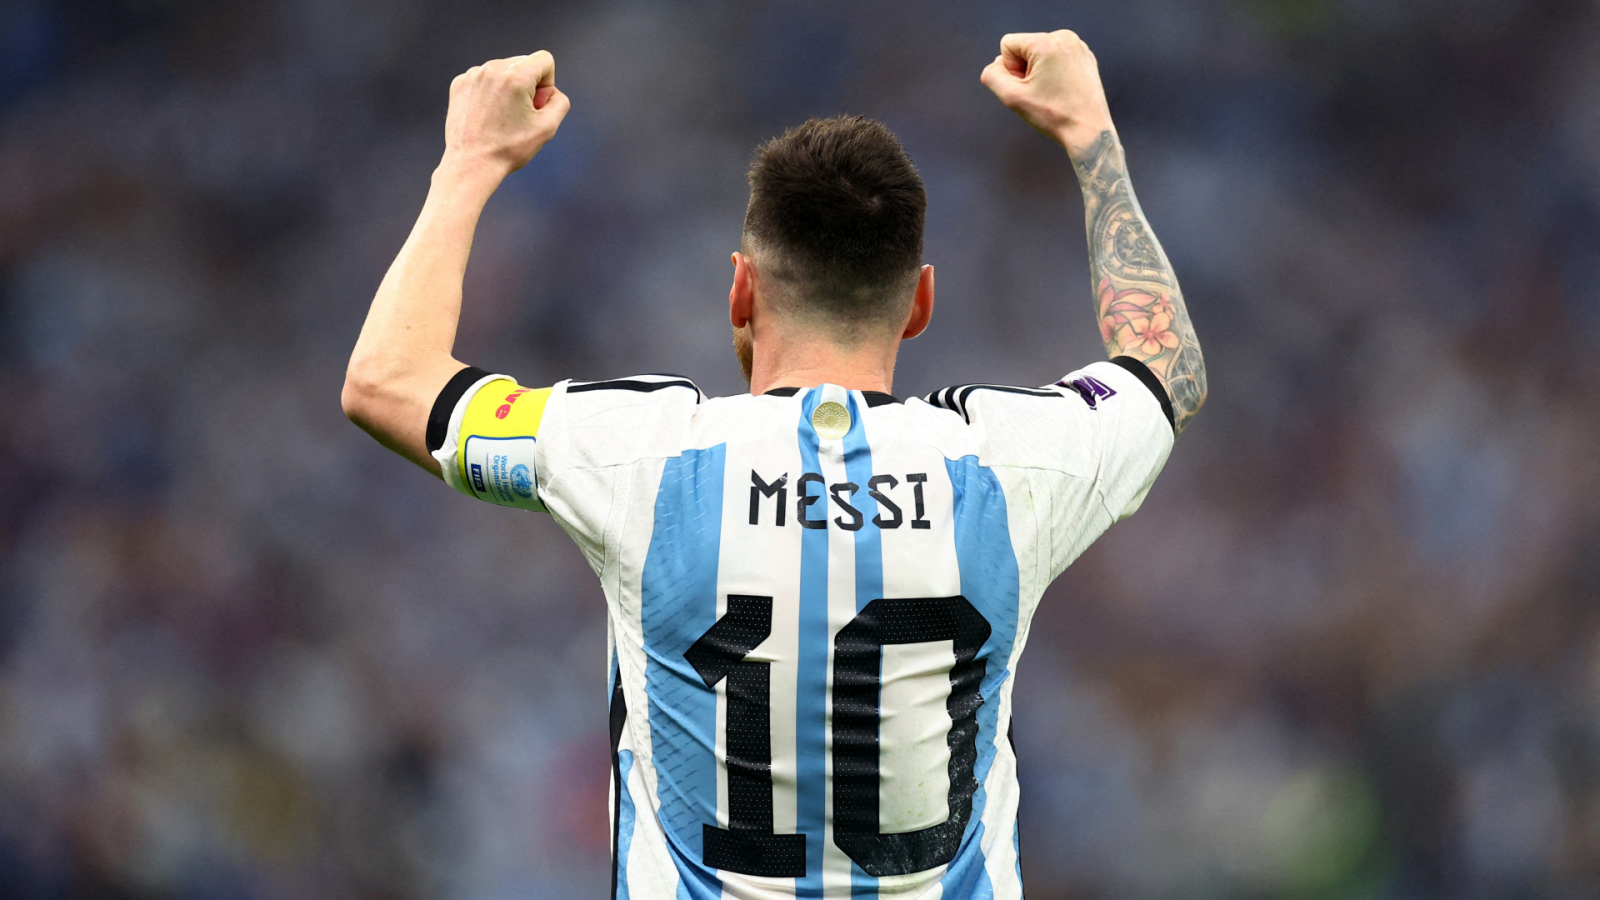 Messi, de final en final con Argentina en busca de la gloria